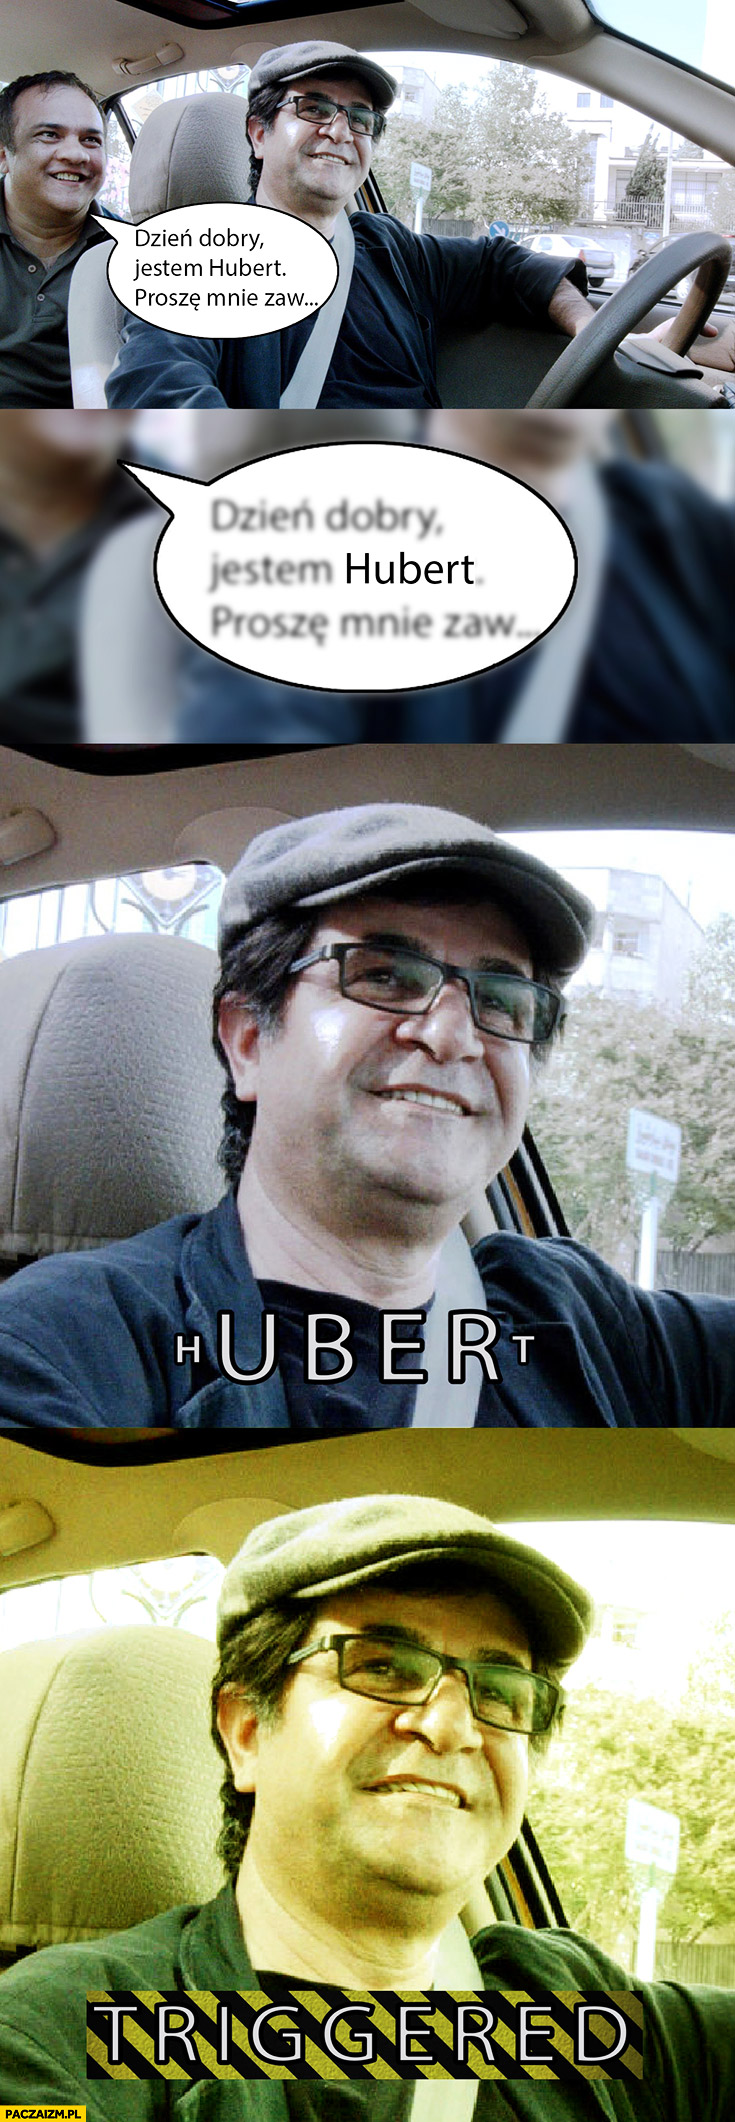 Dzień dobry jestem Hubert Uber taksówkarz triggered